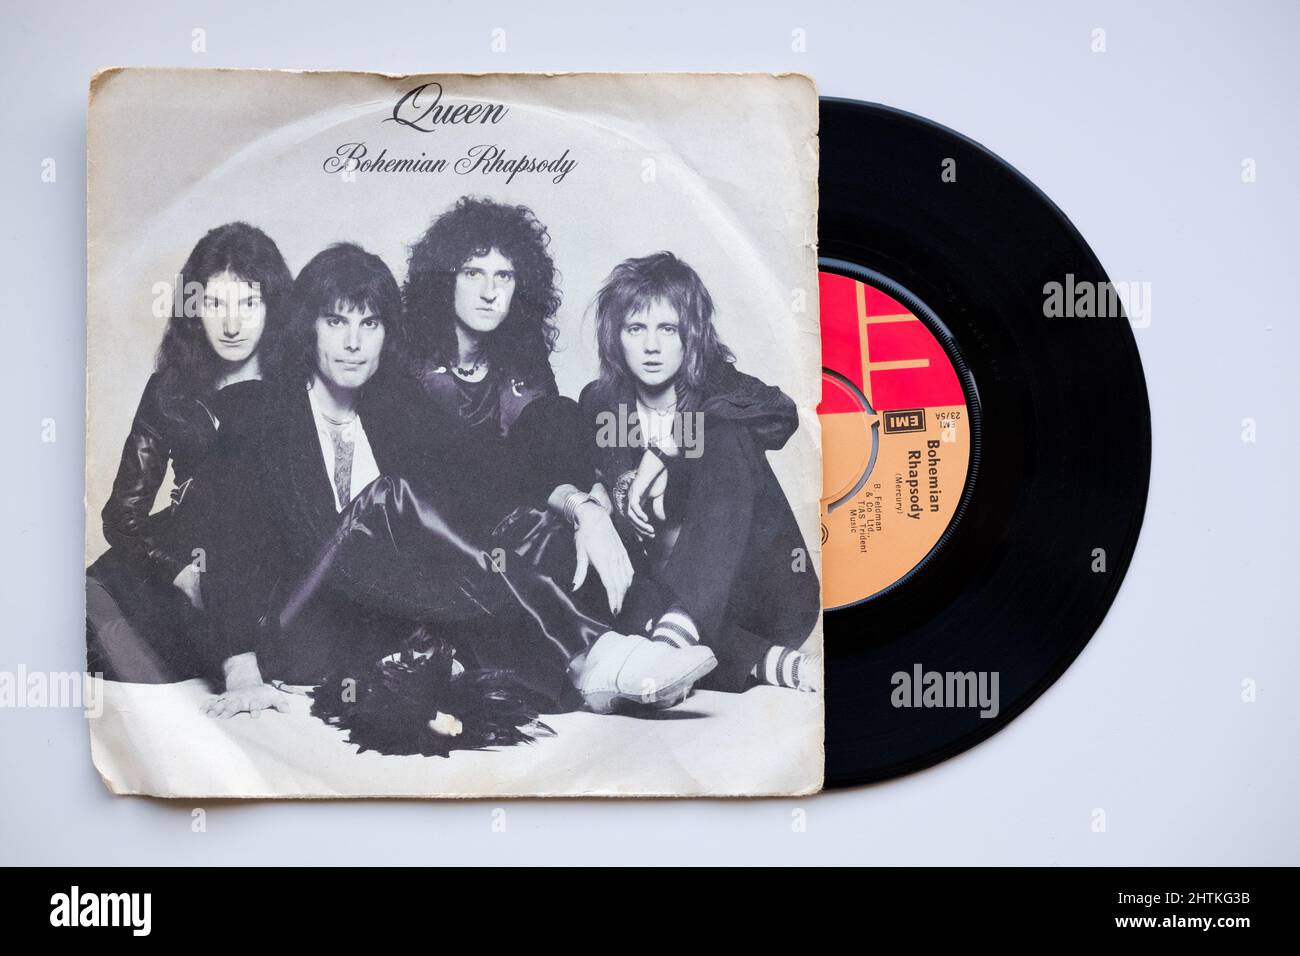 Un'immagine dell'originale 1975 vinil 45rpm singolo rilascio di Bohemian Rhapsody da parte del gruppo Queen. Il record è mostrato nella sua custodia originale Foto Stock